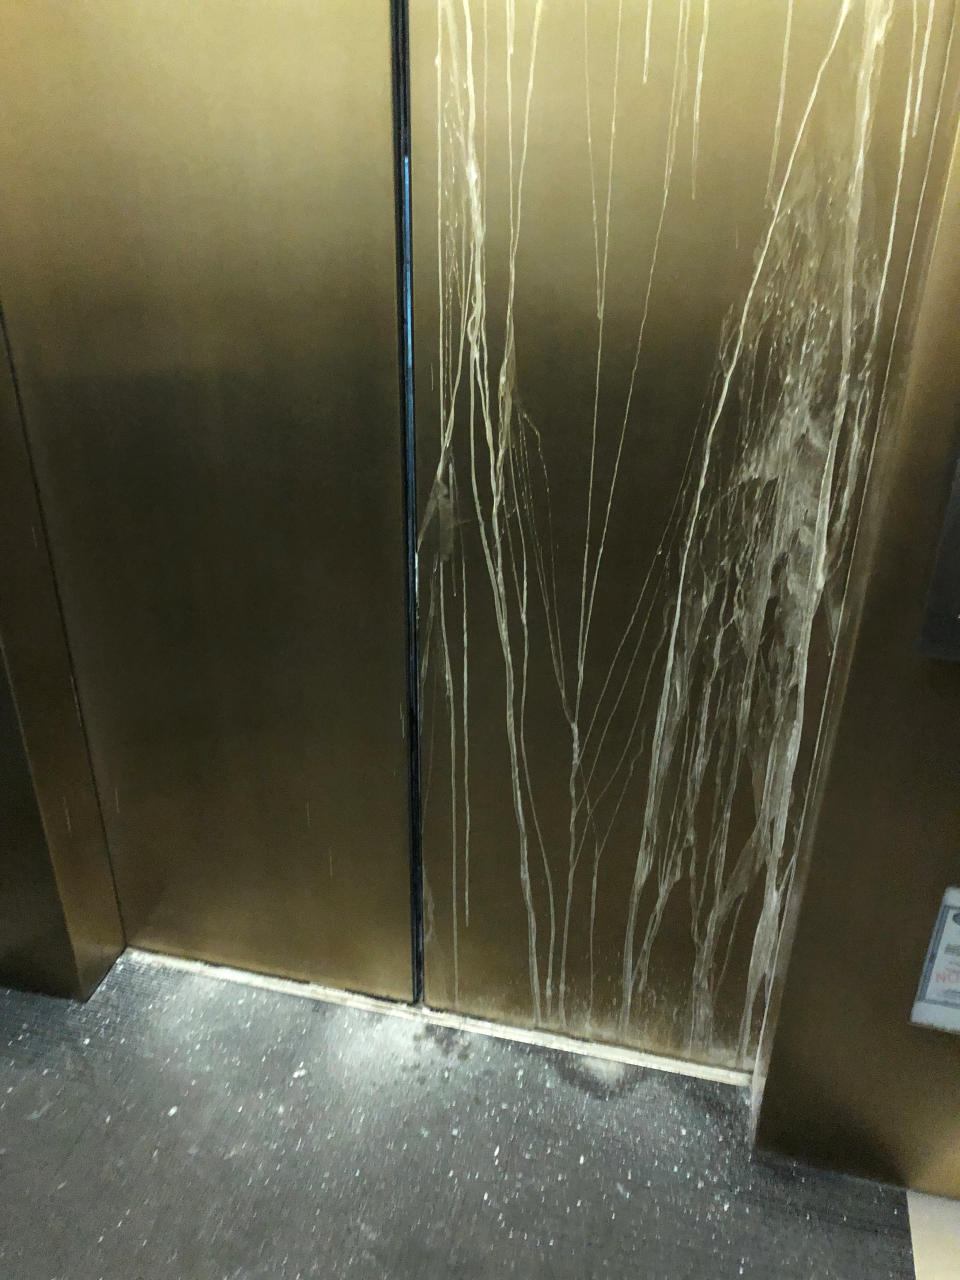 Así lucía la puerta del ascensor/Katy Martinez/via REUTERS